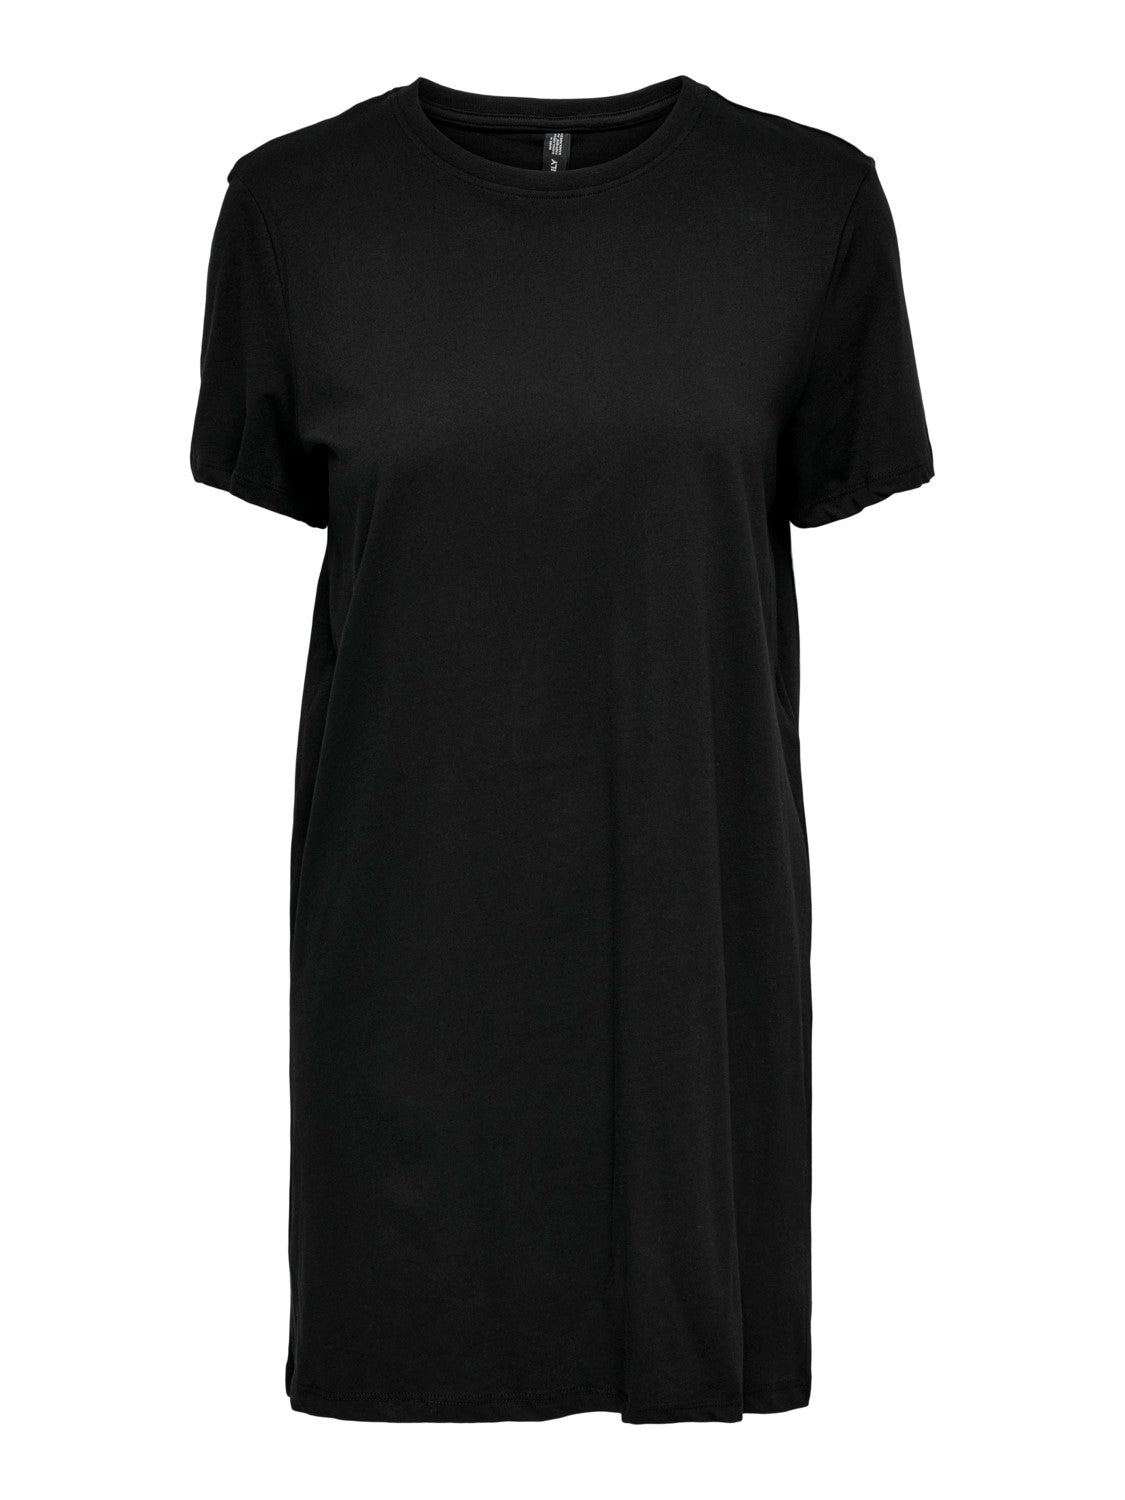 Women's ONLY Black T-Shirt Dress